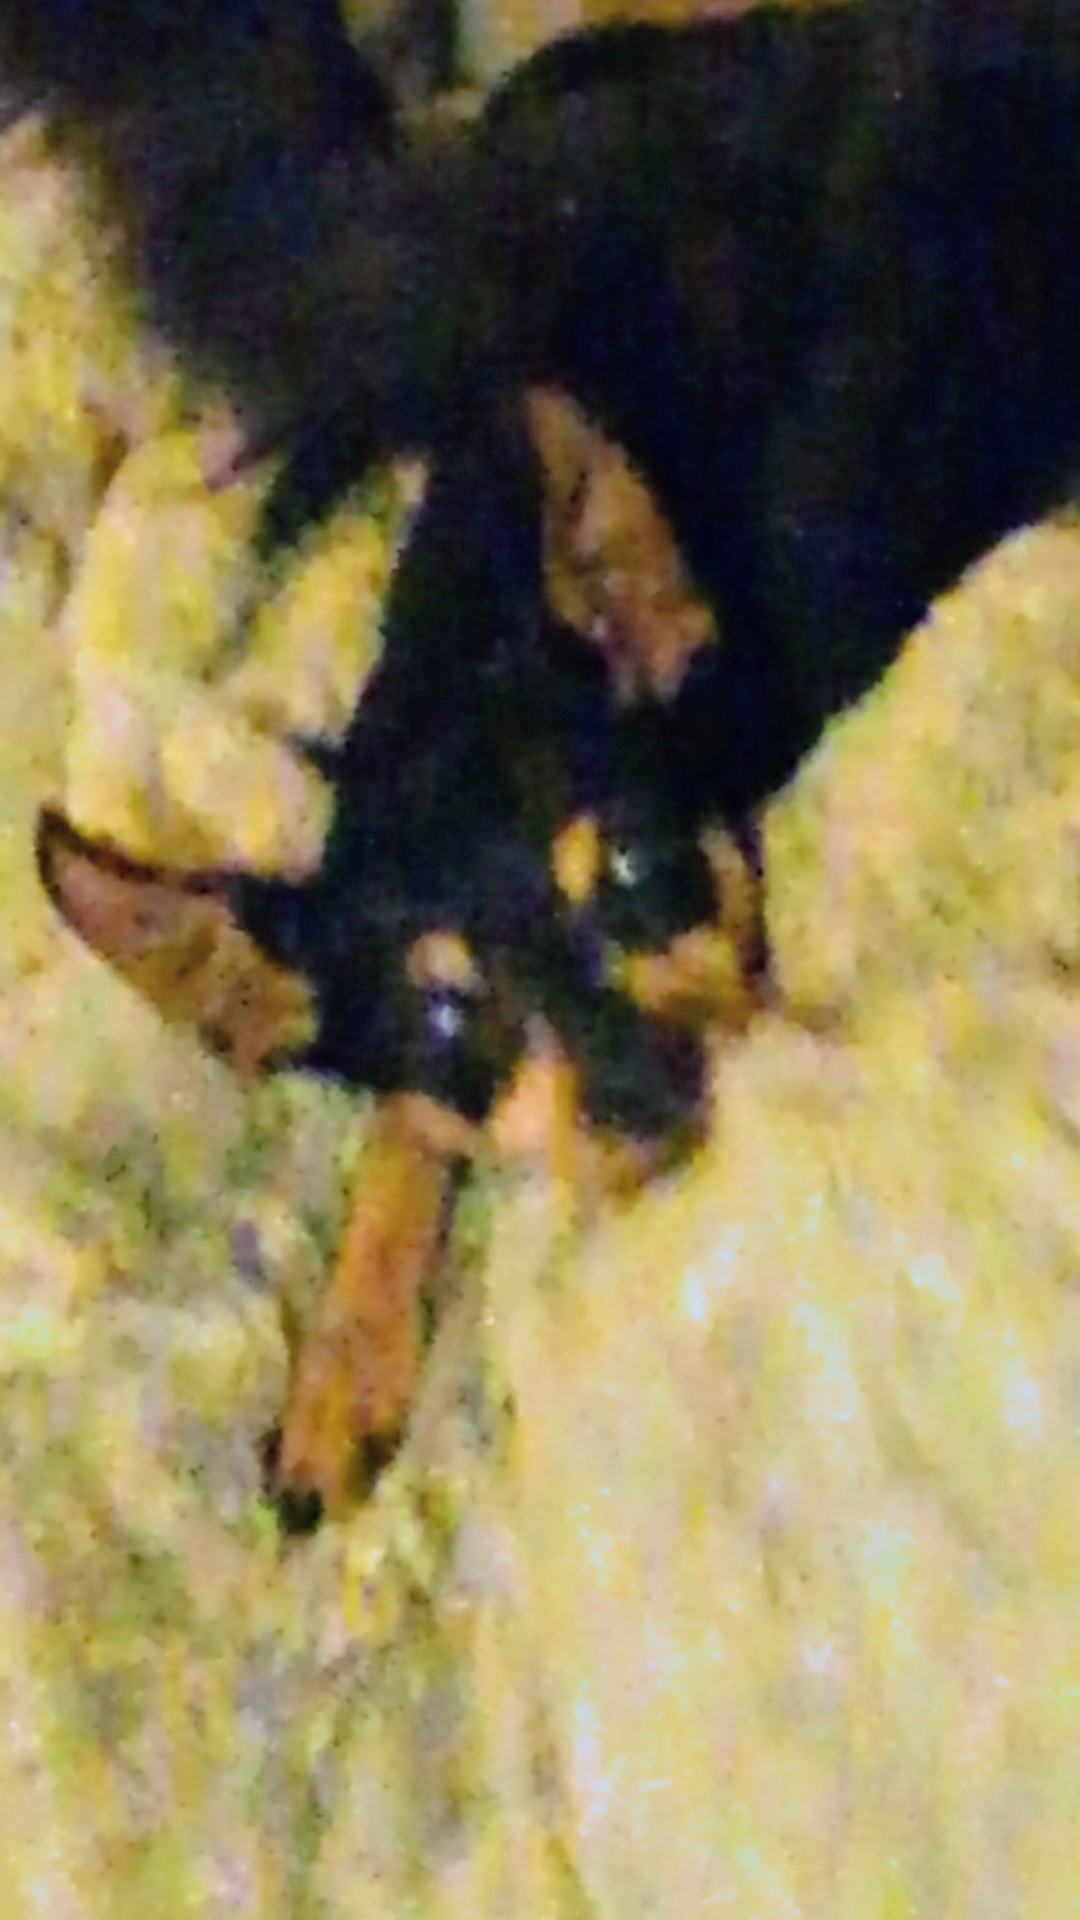 Image of Maya, Lost Dog